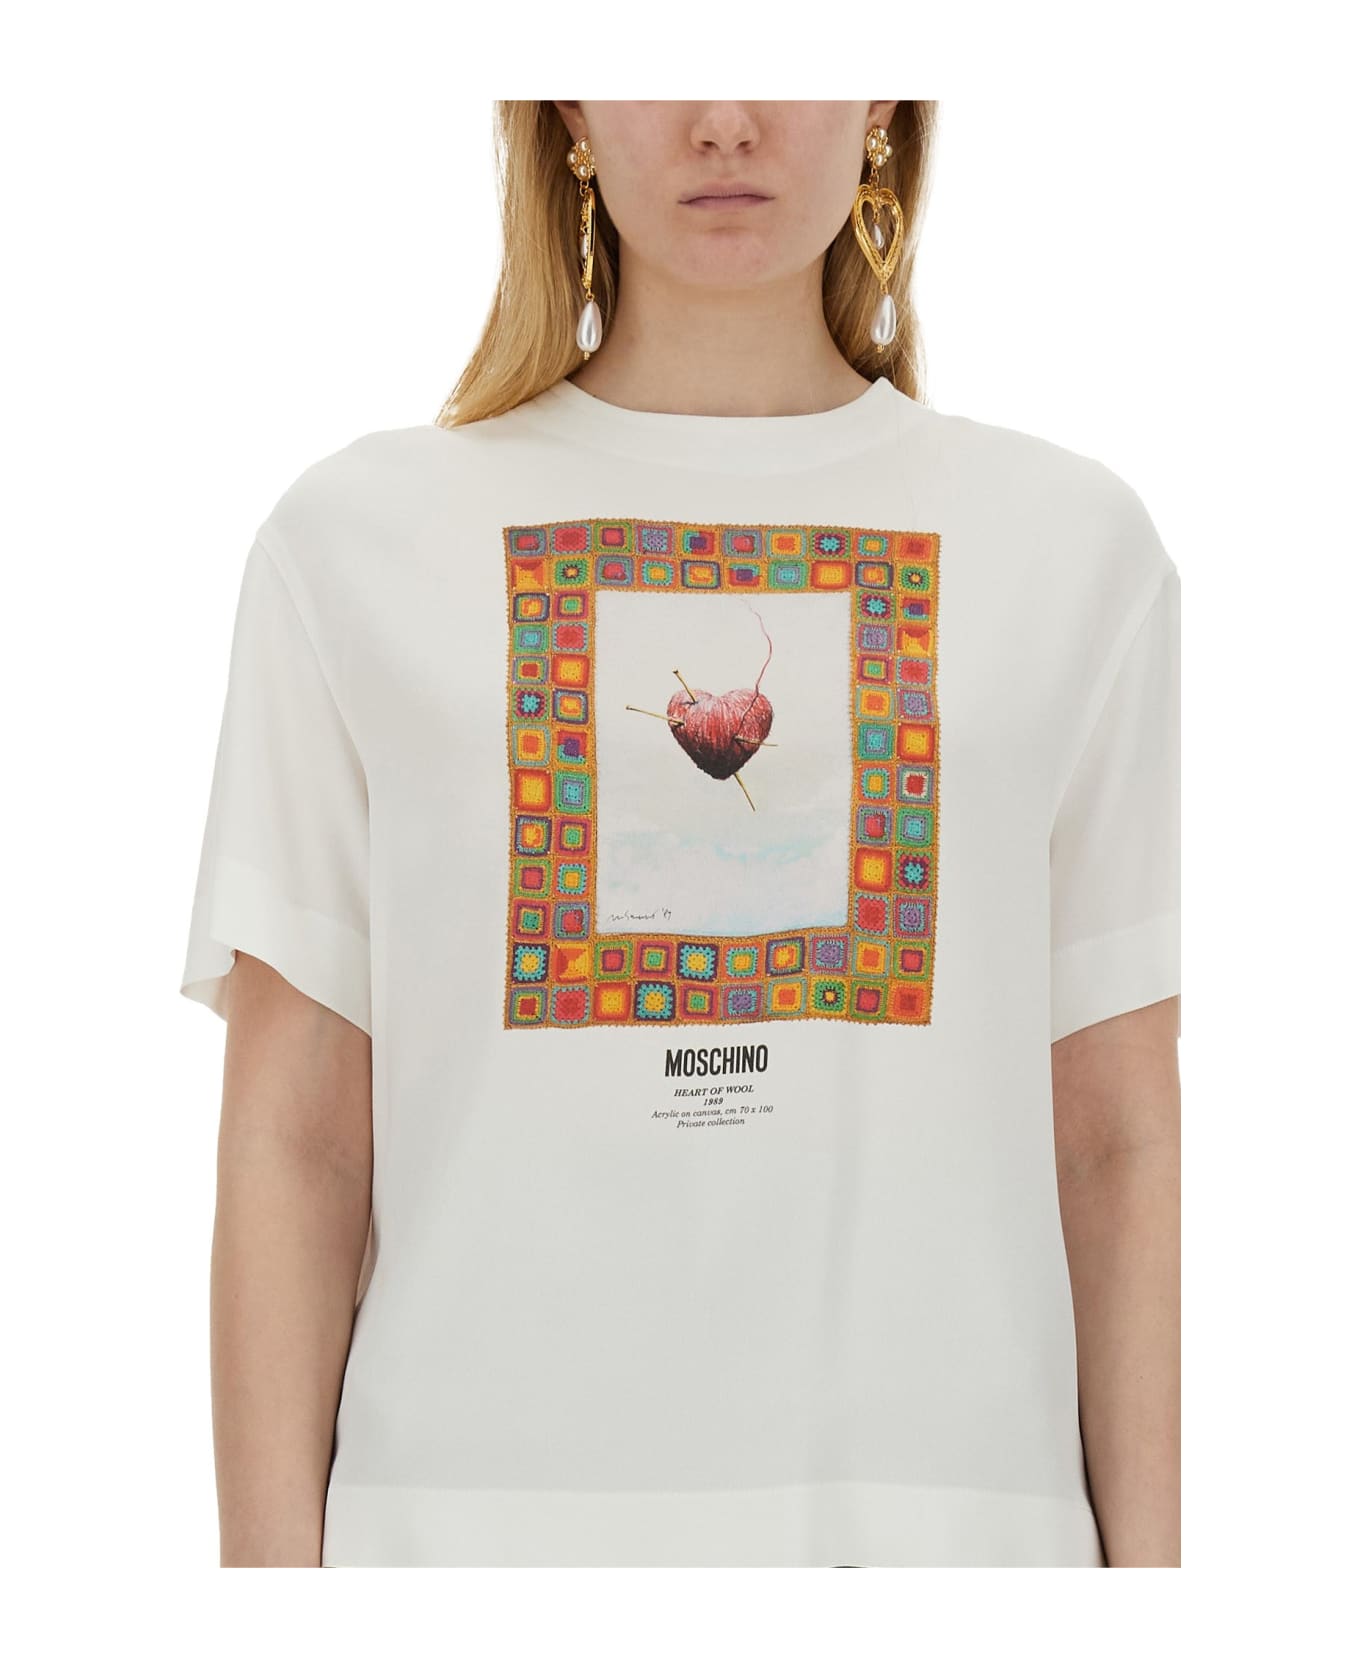 Moschino T-shirt 'heart' - White